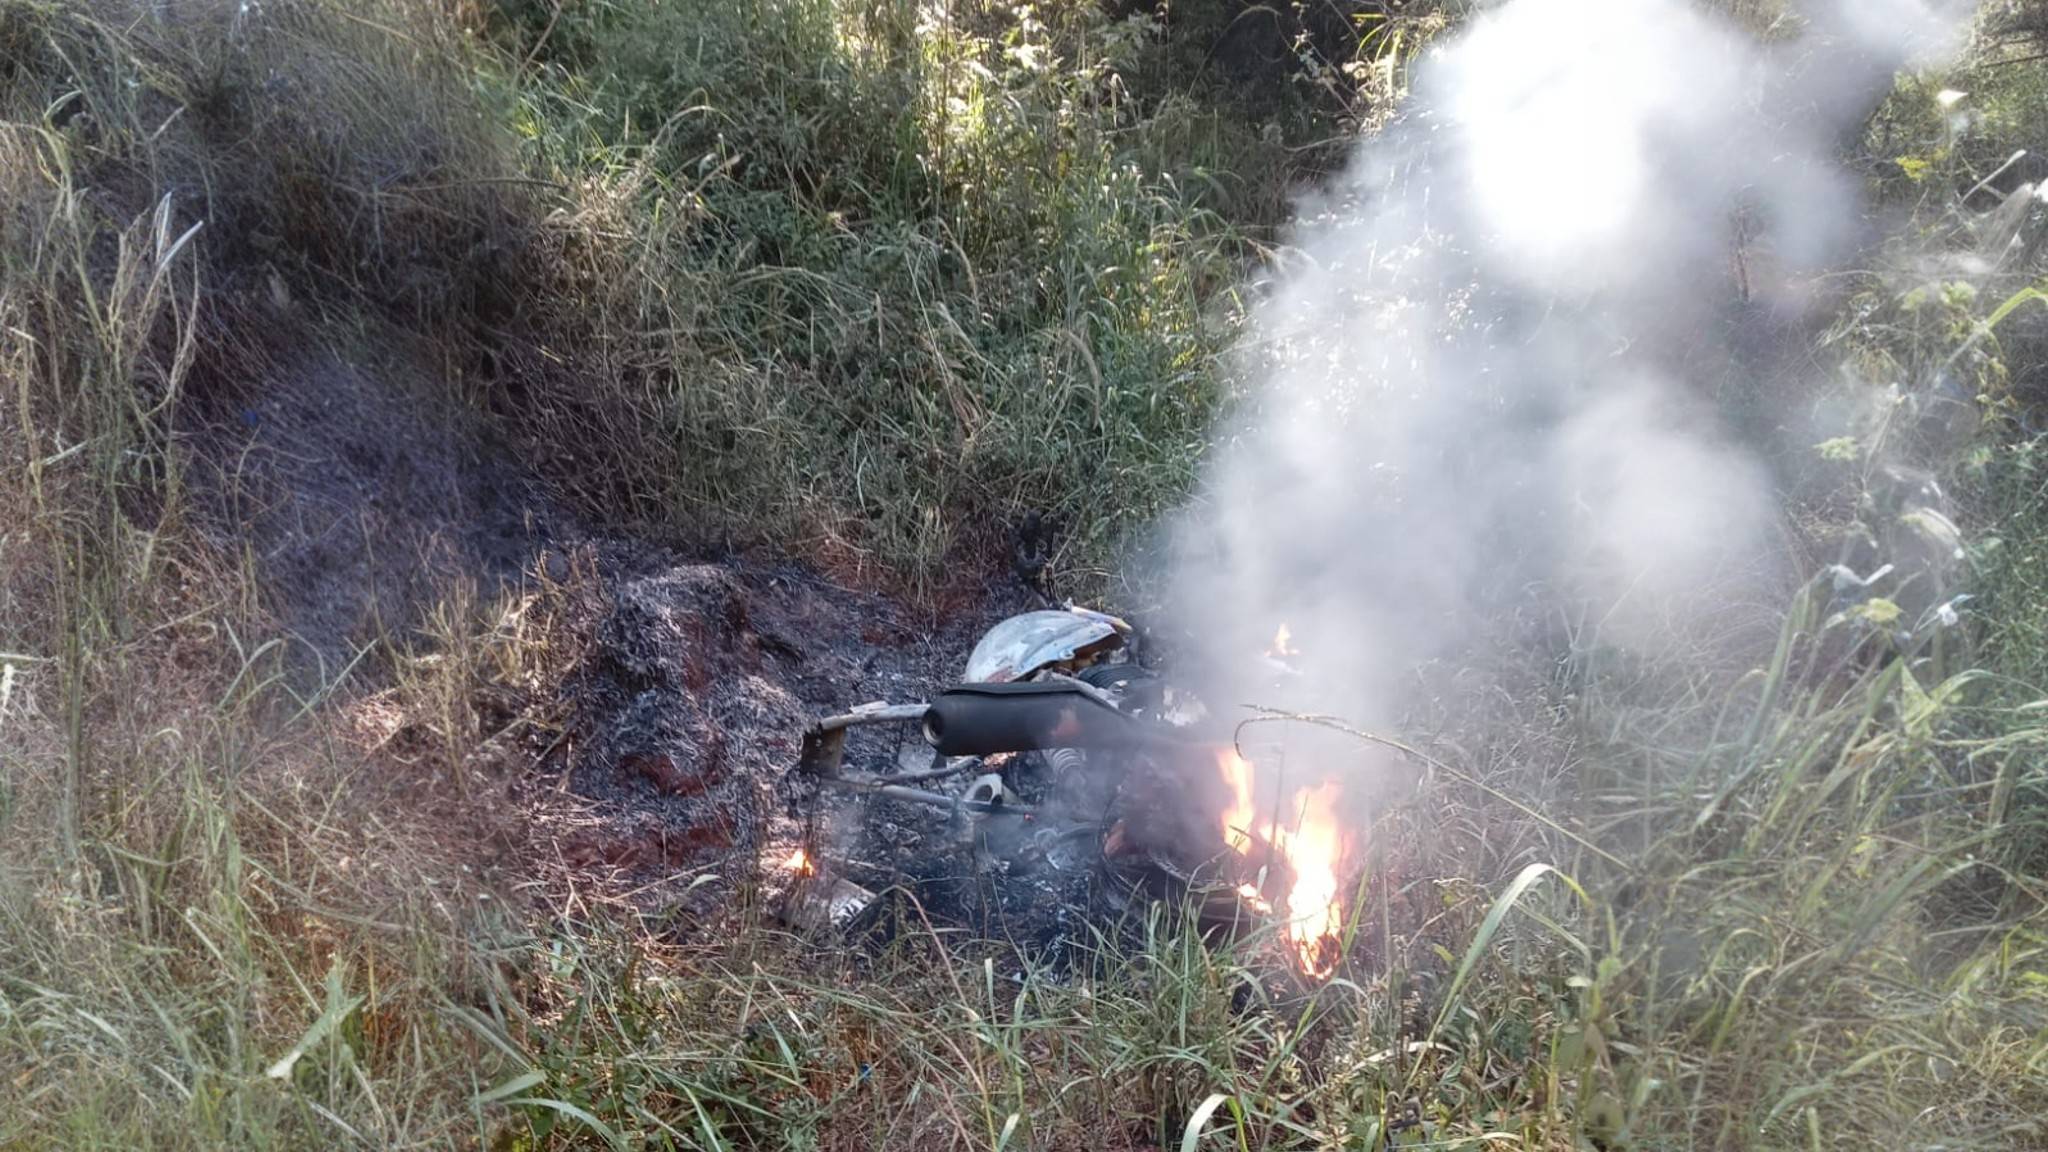 Motocicleta suspeita de ligação com homicídio em igreja é encontrada em chamas em estrada rural